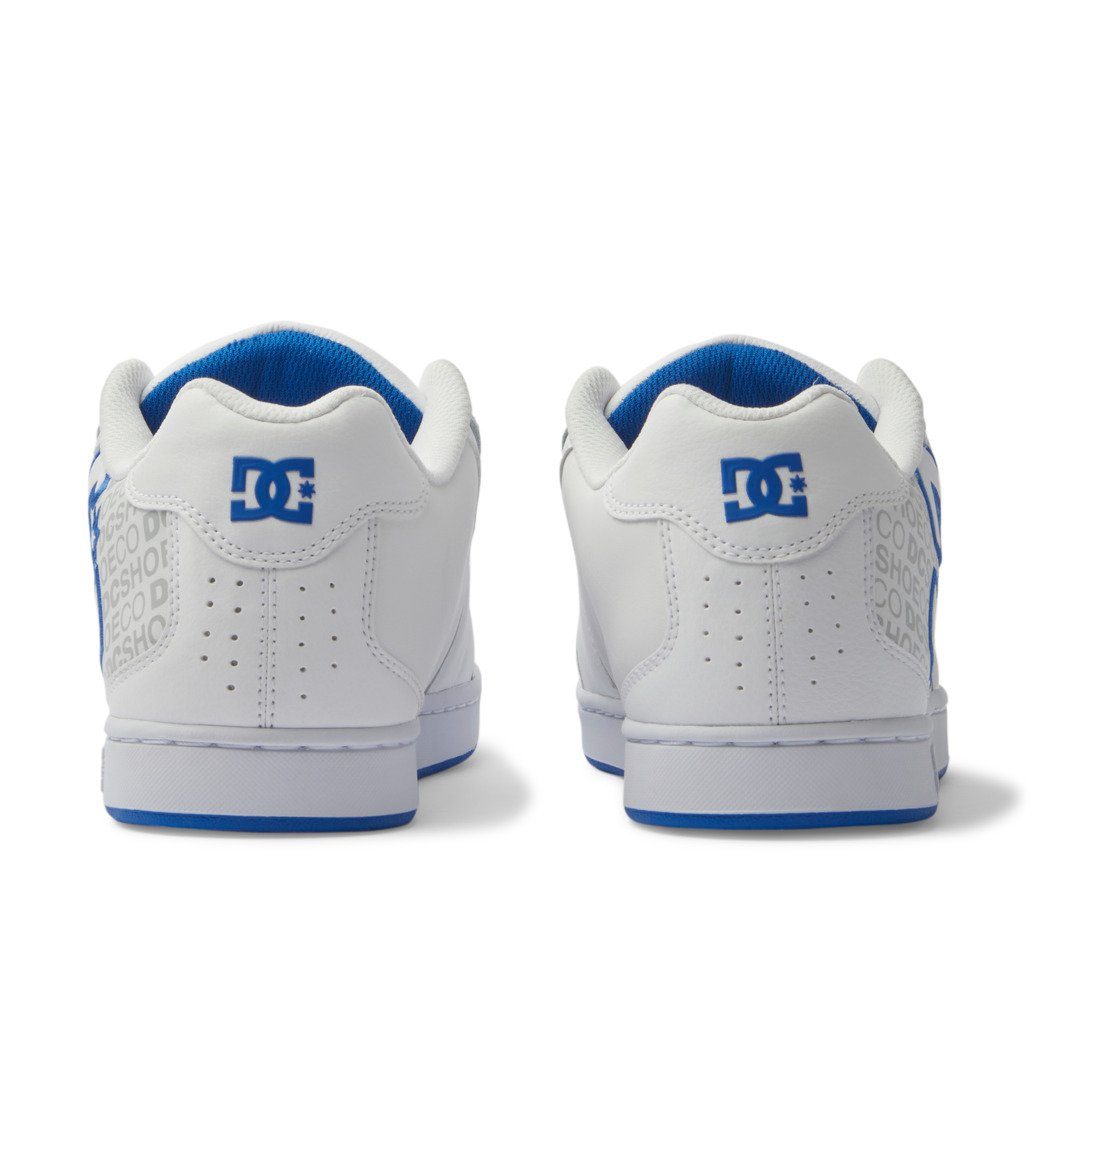 DC Shoes Sneaker White/Grey/Blue Net